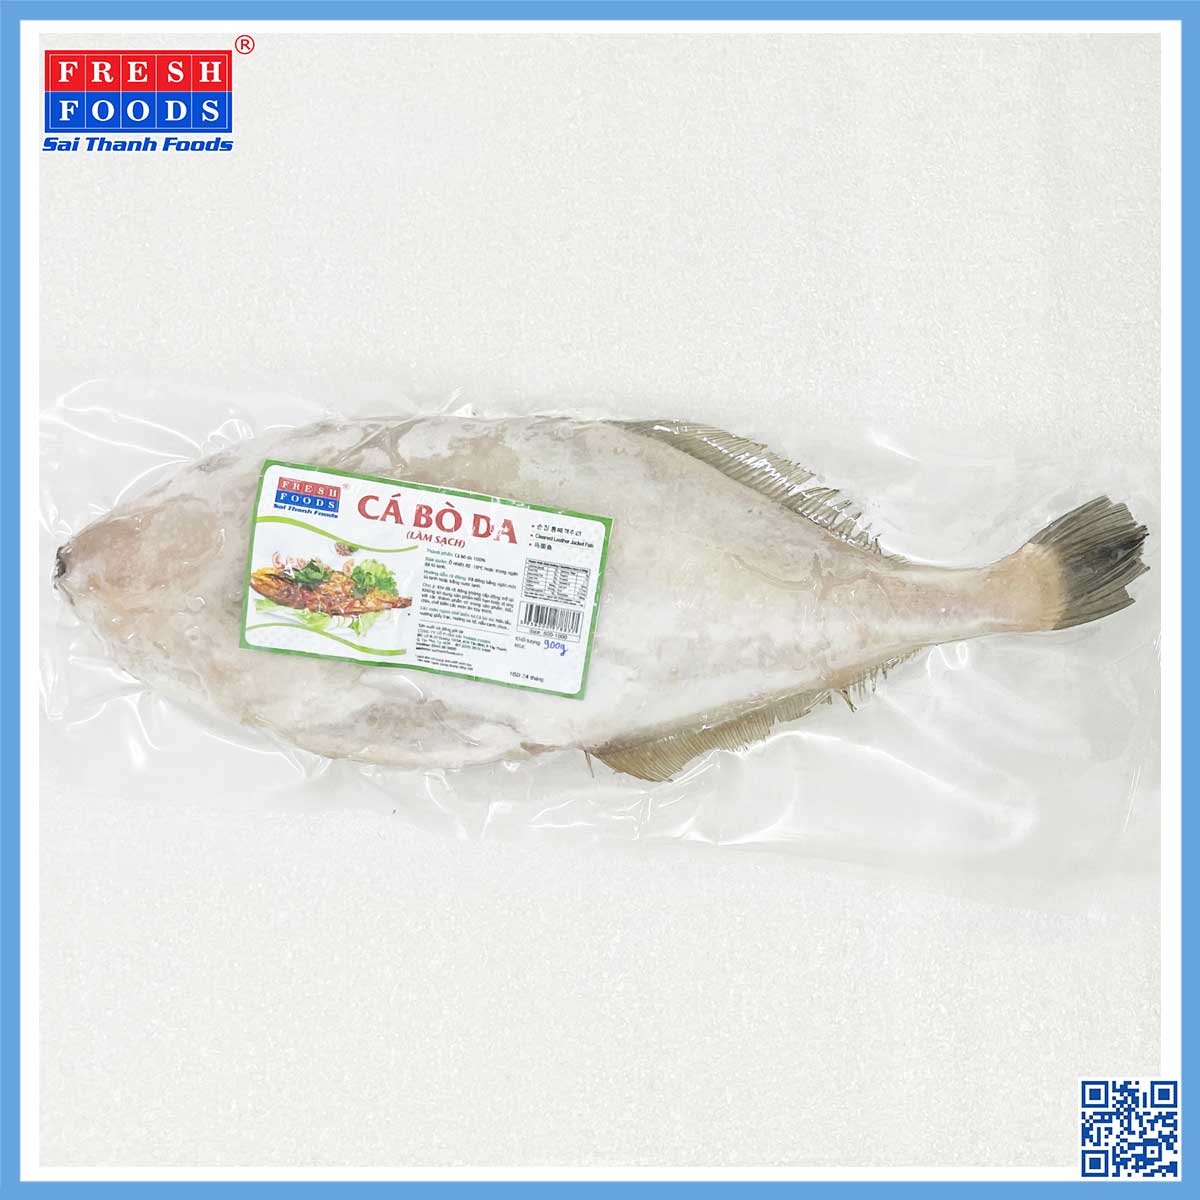 Cá bò da - Thủy Hải Sản Sài Thành Foods - Công Ty TNHH Southern Fresh Foods